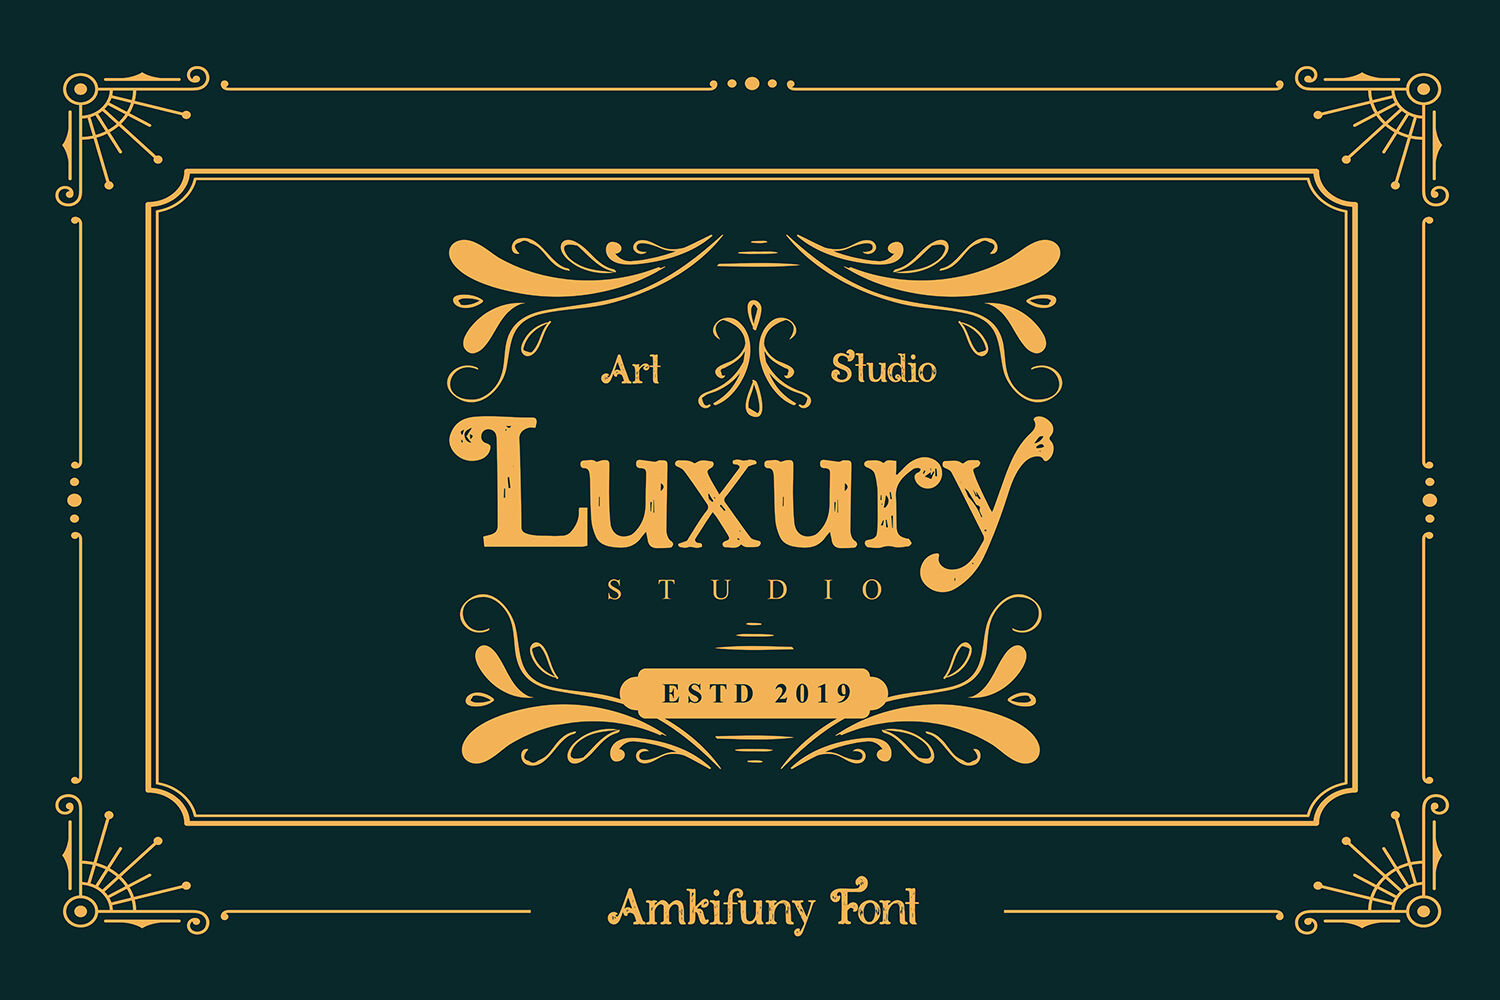 Amkifuny New Brush Serif Display Font Typeface By Maulana Creative Thehungryjpeg Com